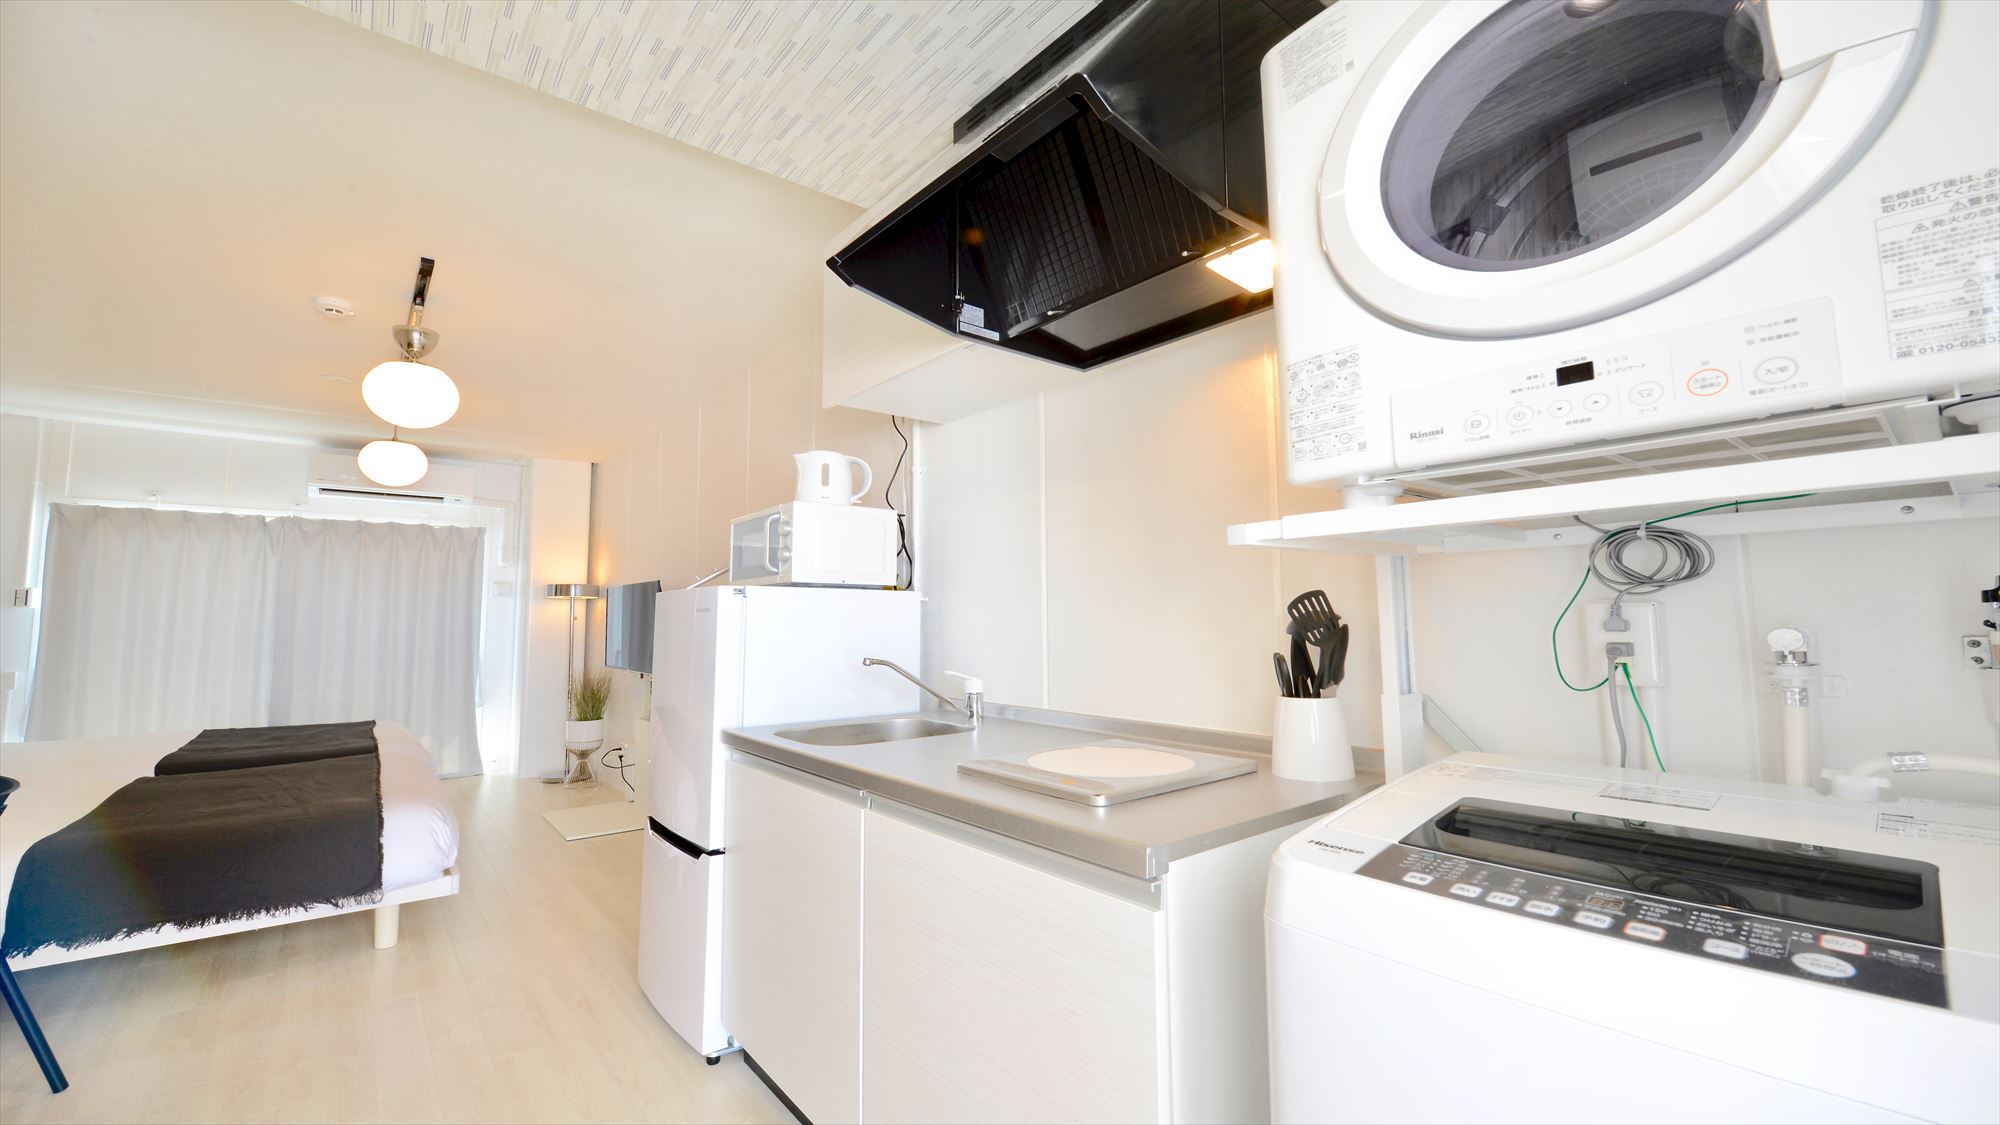 801号室キッチン&洗濯機・乾燥機